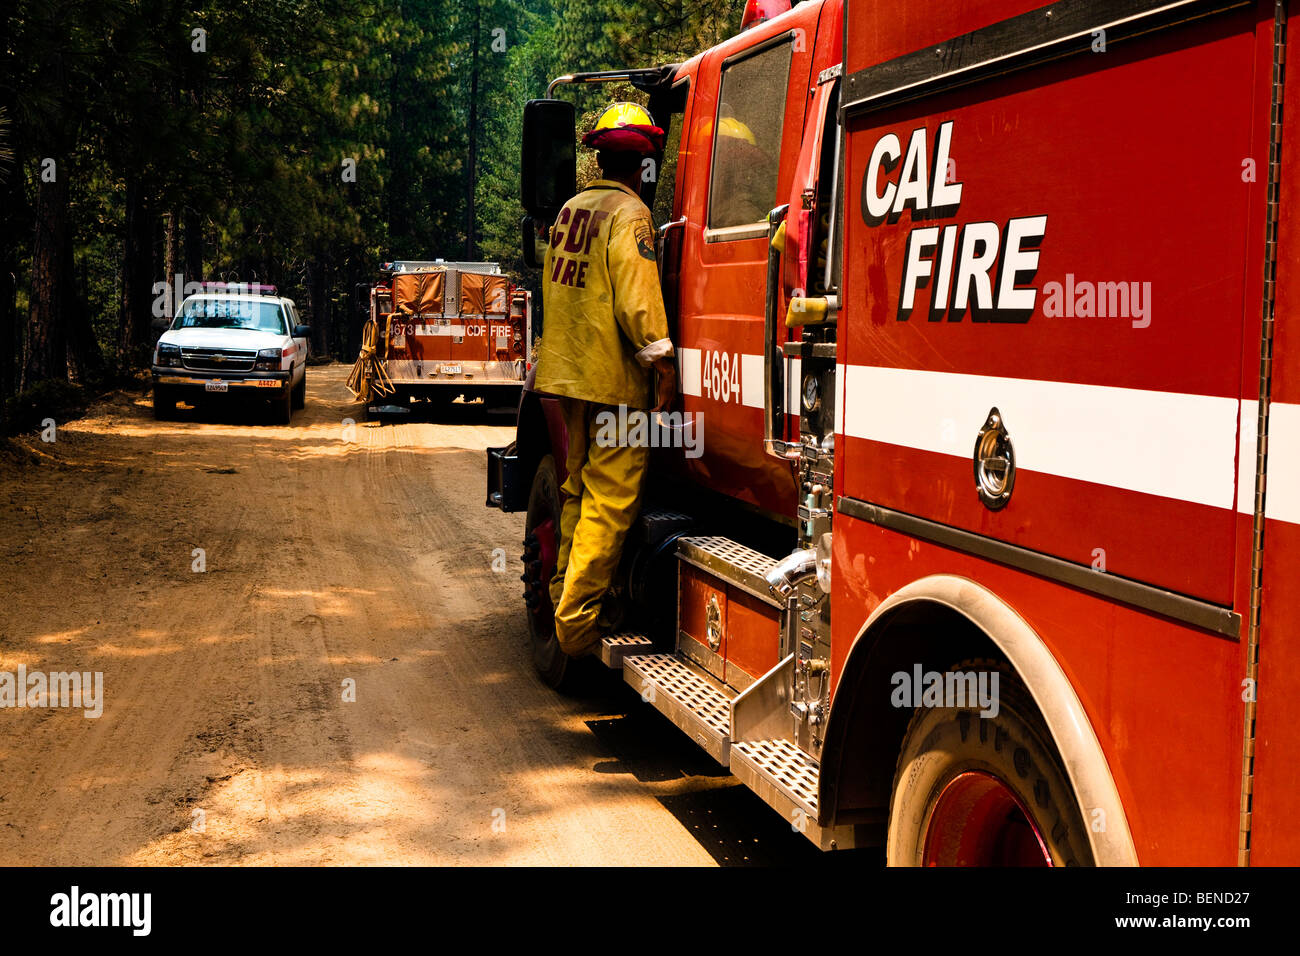 Motore Fire e wildland vigili del fuoco a cavaliere della California wildfire in Stanislaus National Forest. CALFIRE / CDF Foto Stock